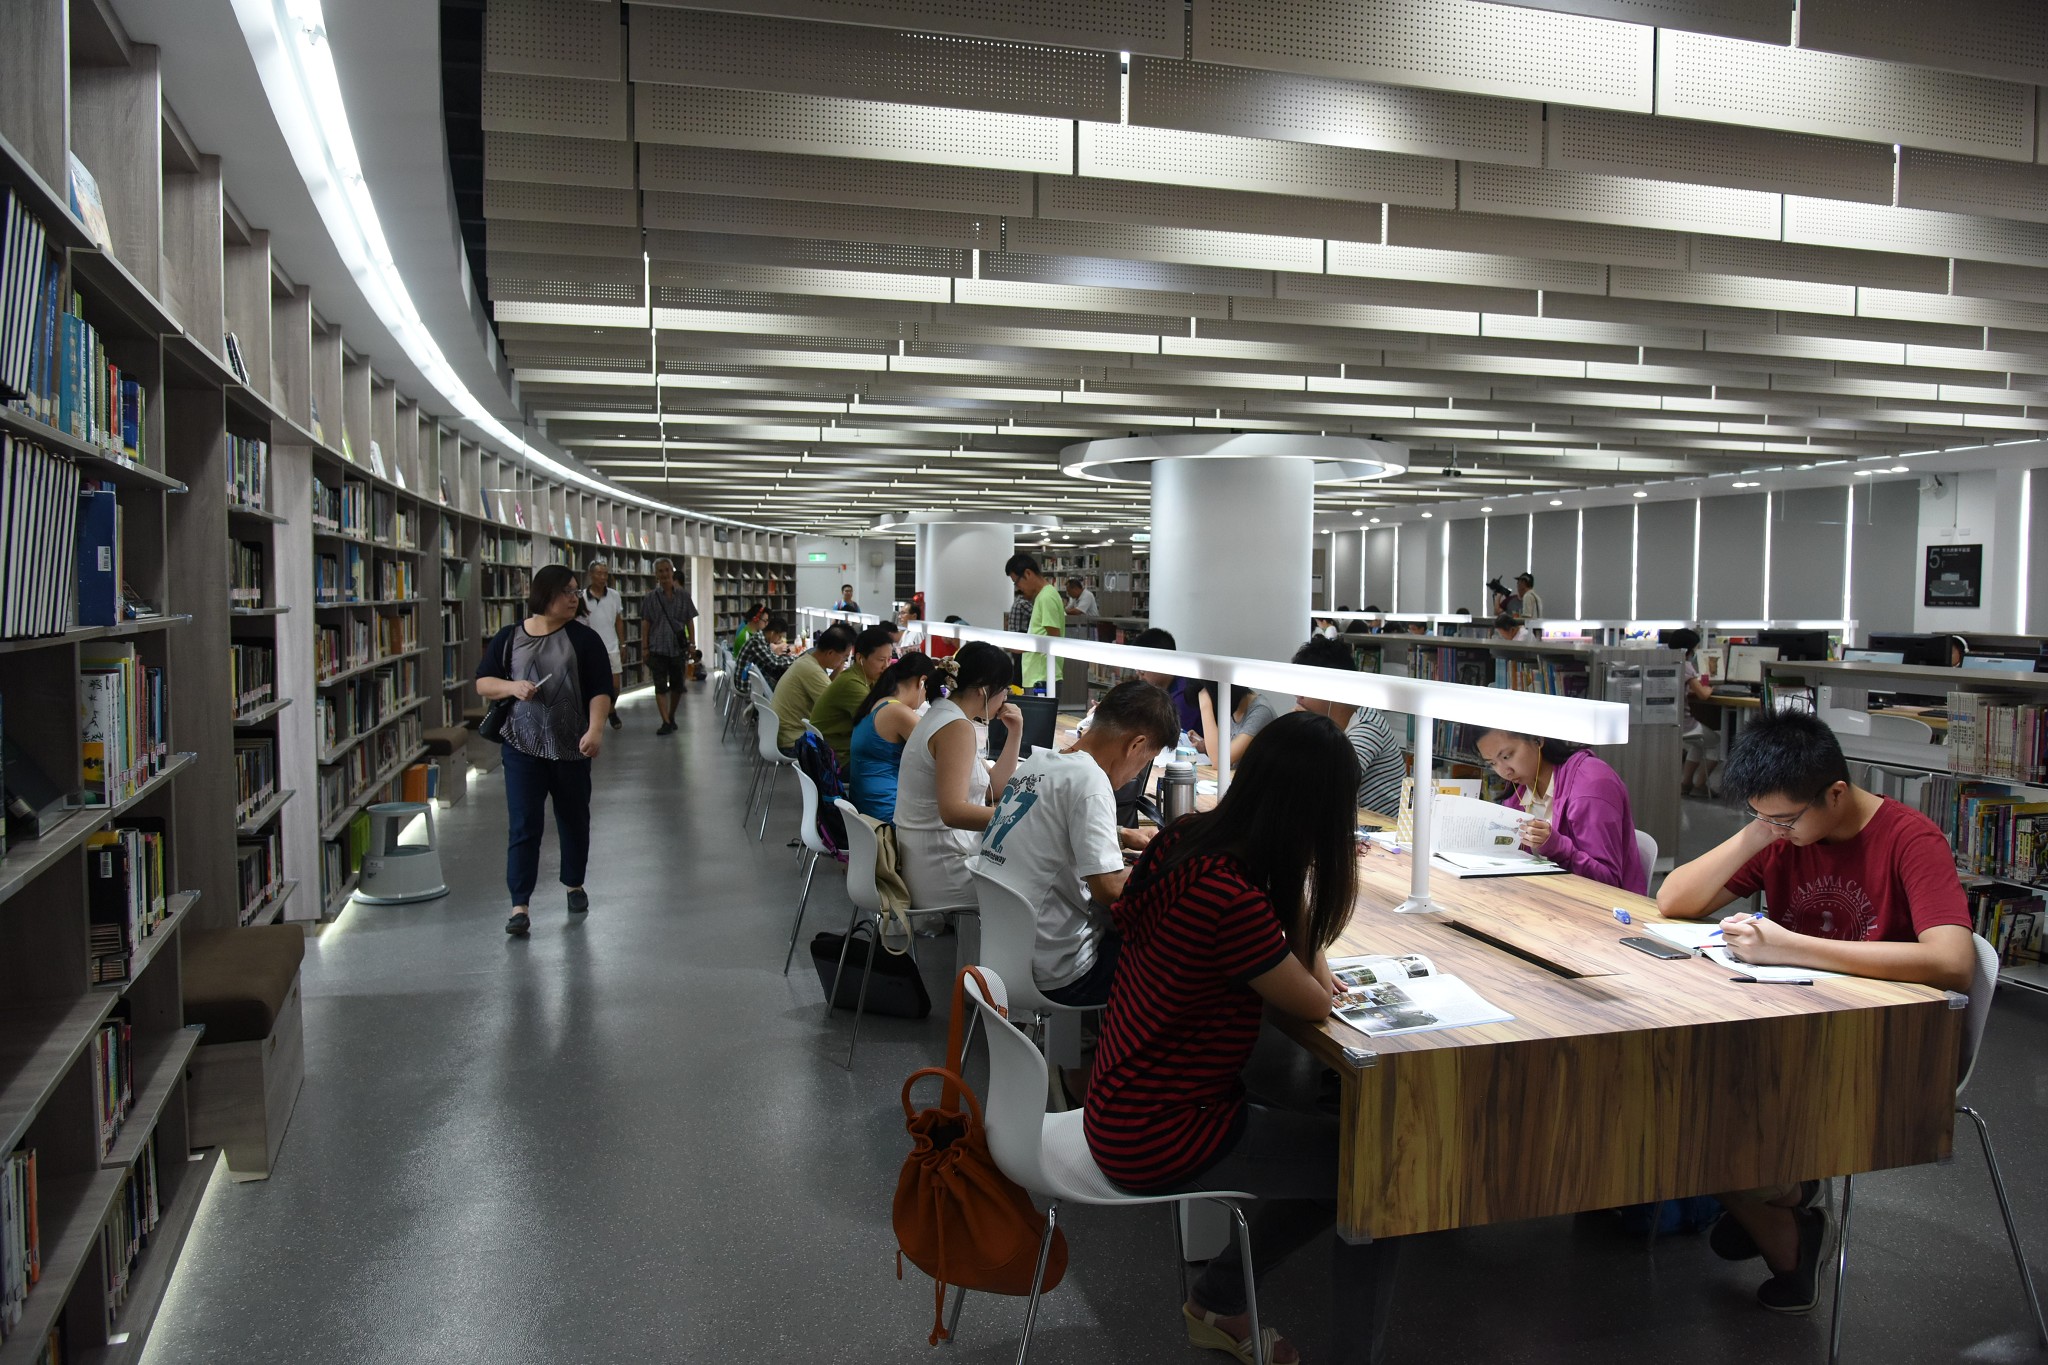 巨型書牆打造閱讀的優雅-市立圖書館林口分館全新啟用DSC_5404.JPG